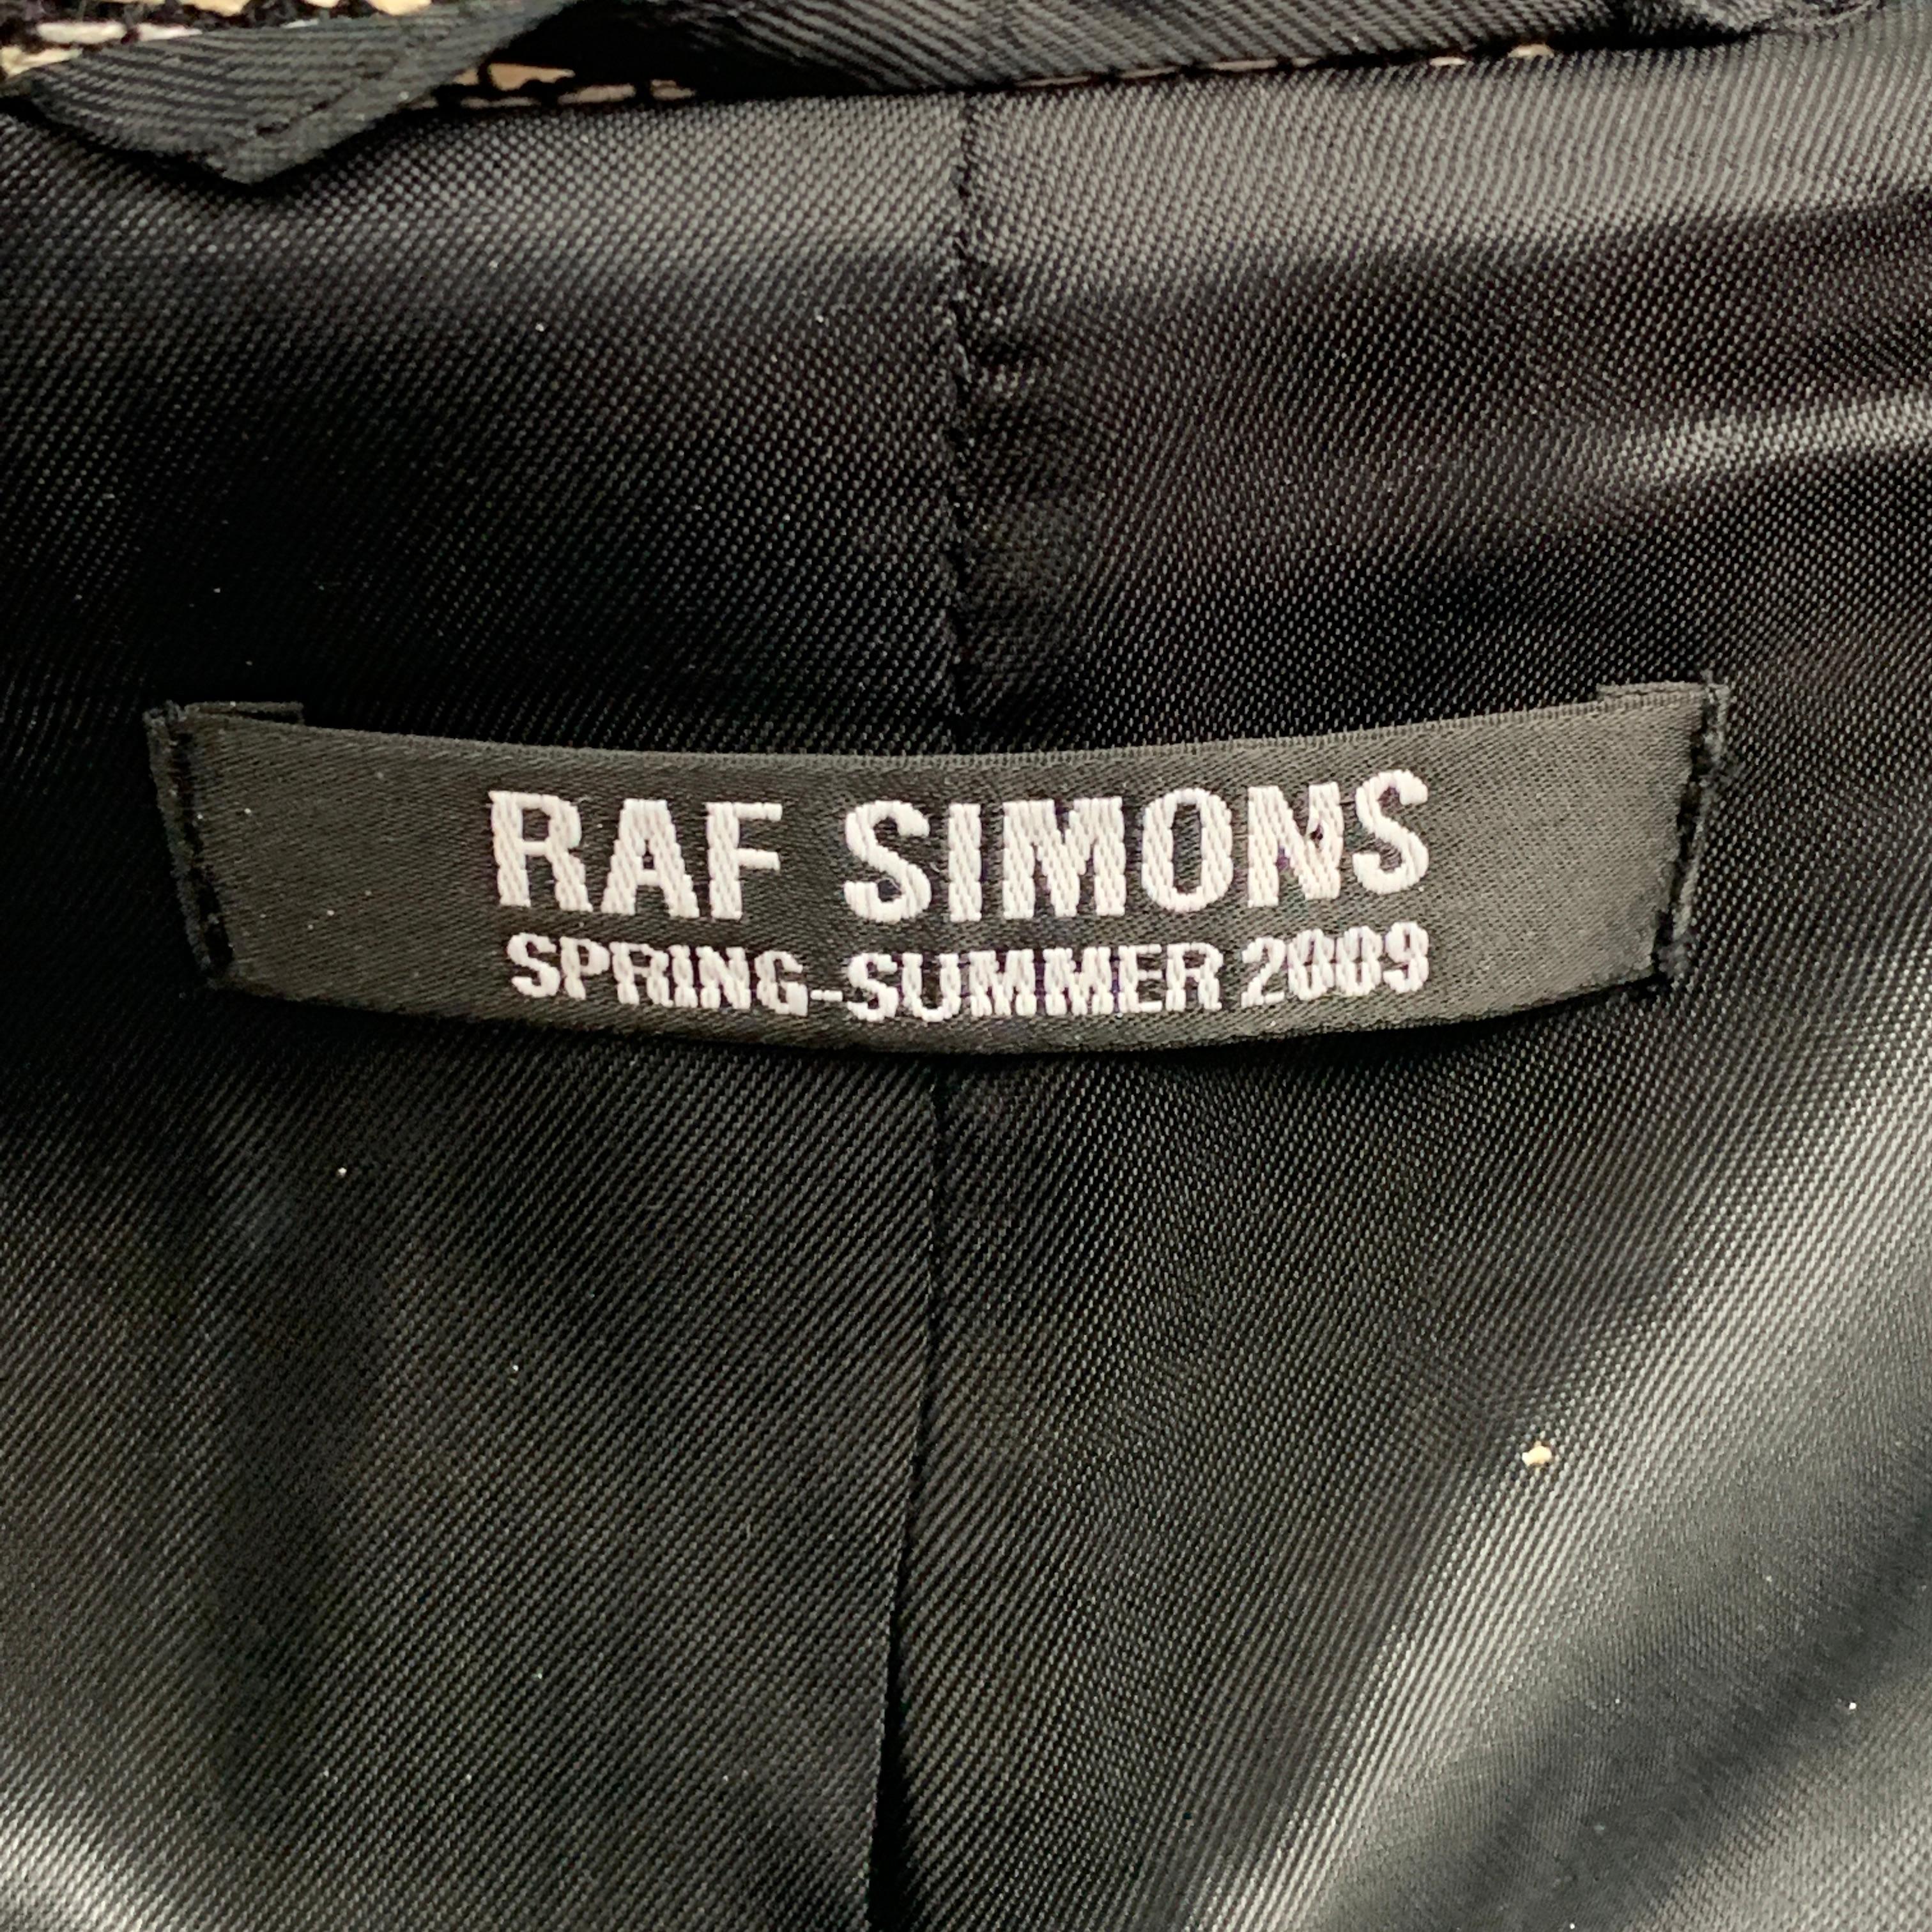 Gray RAF SIMONS Spring-Summer 2009 Size 36 White & Black Woven Cotton Blend Vest